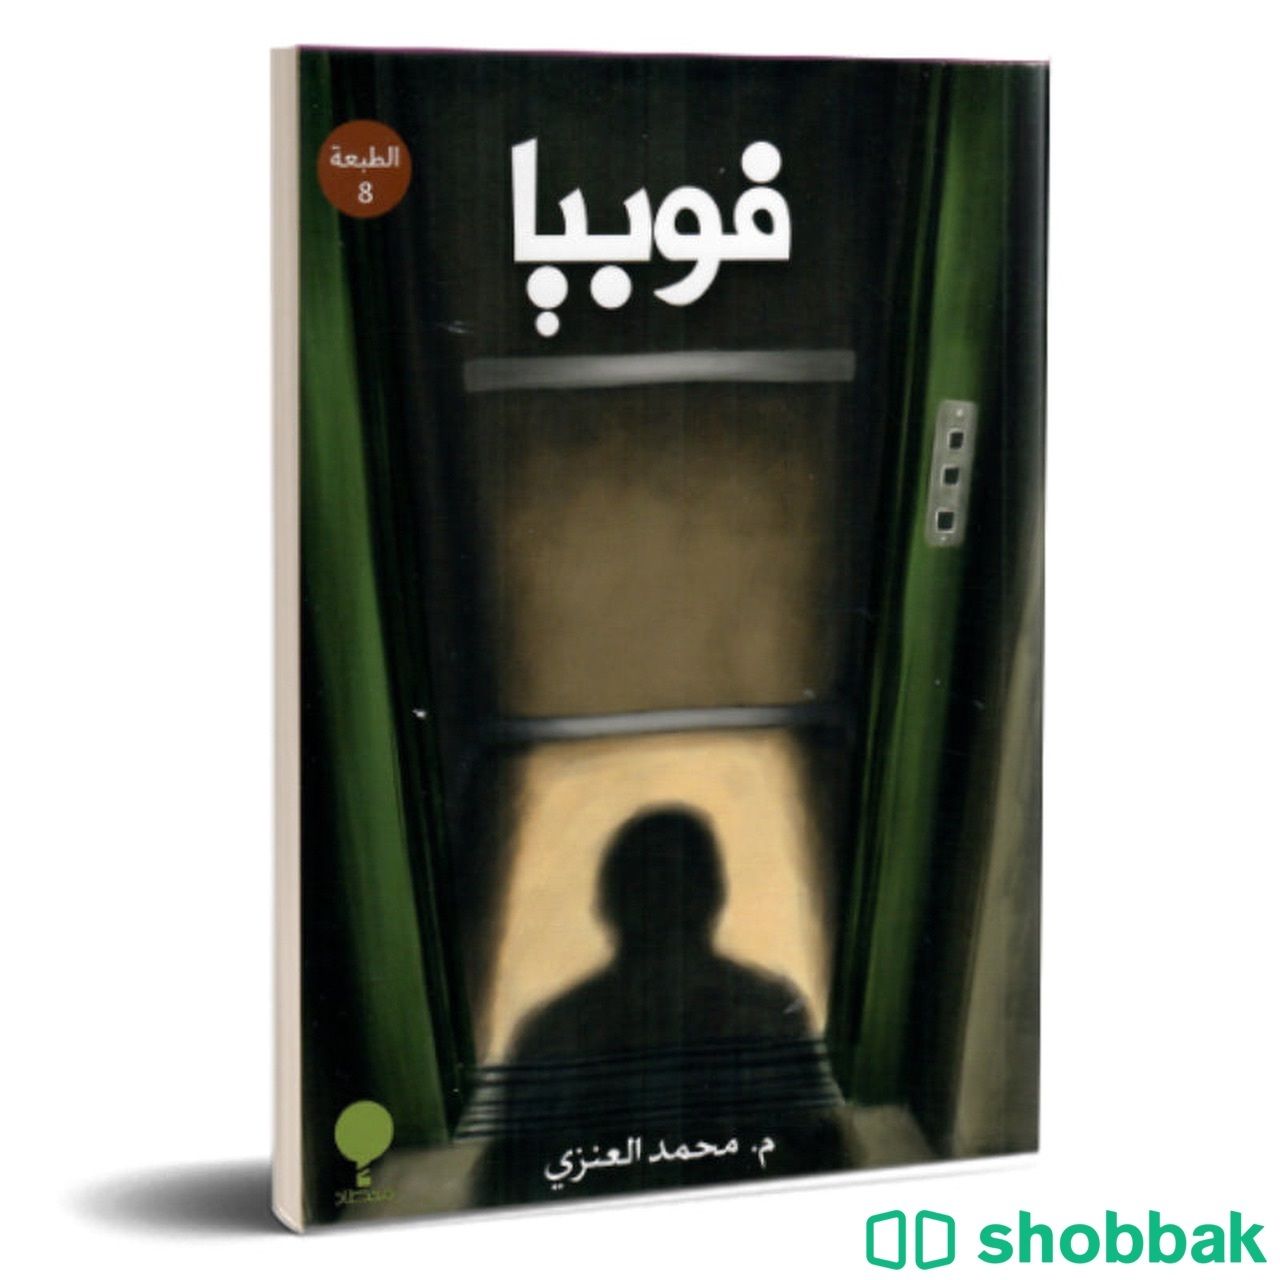 رواية فوبيا للكاتب محمد العنزي  Shobbak Saudi Arabia